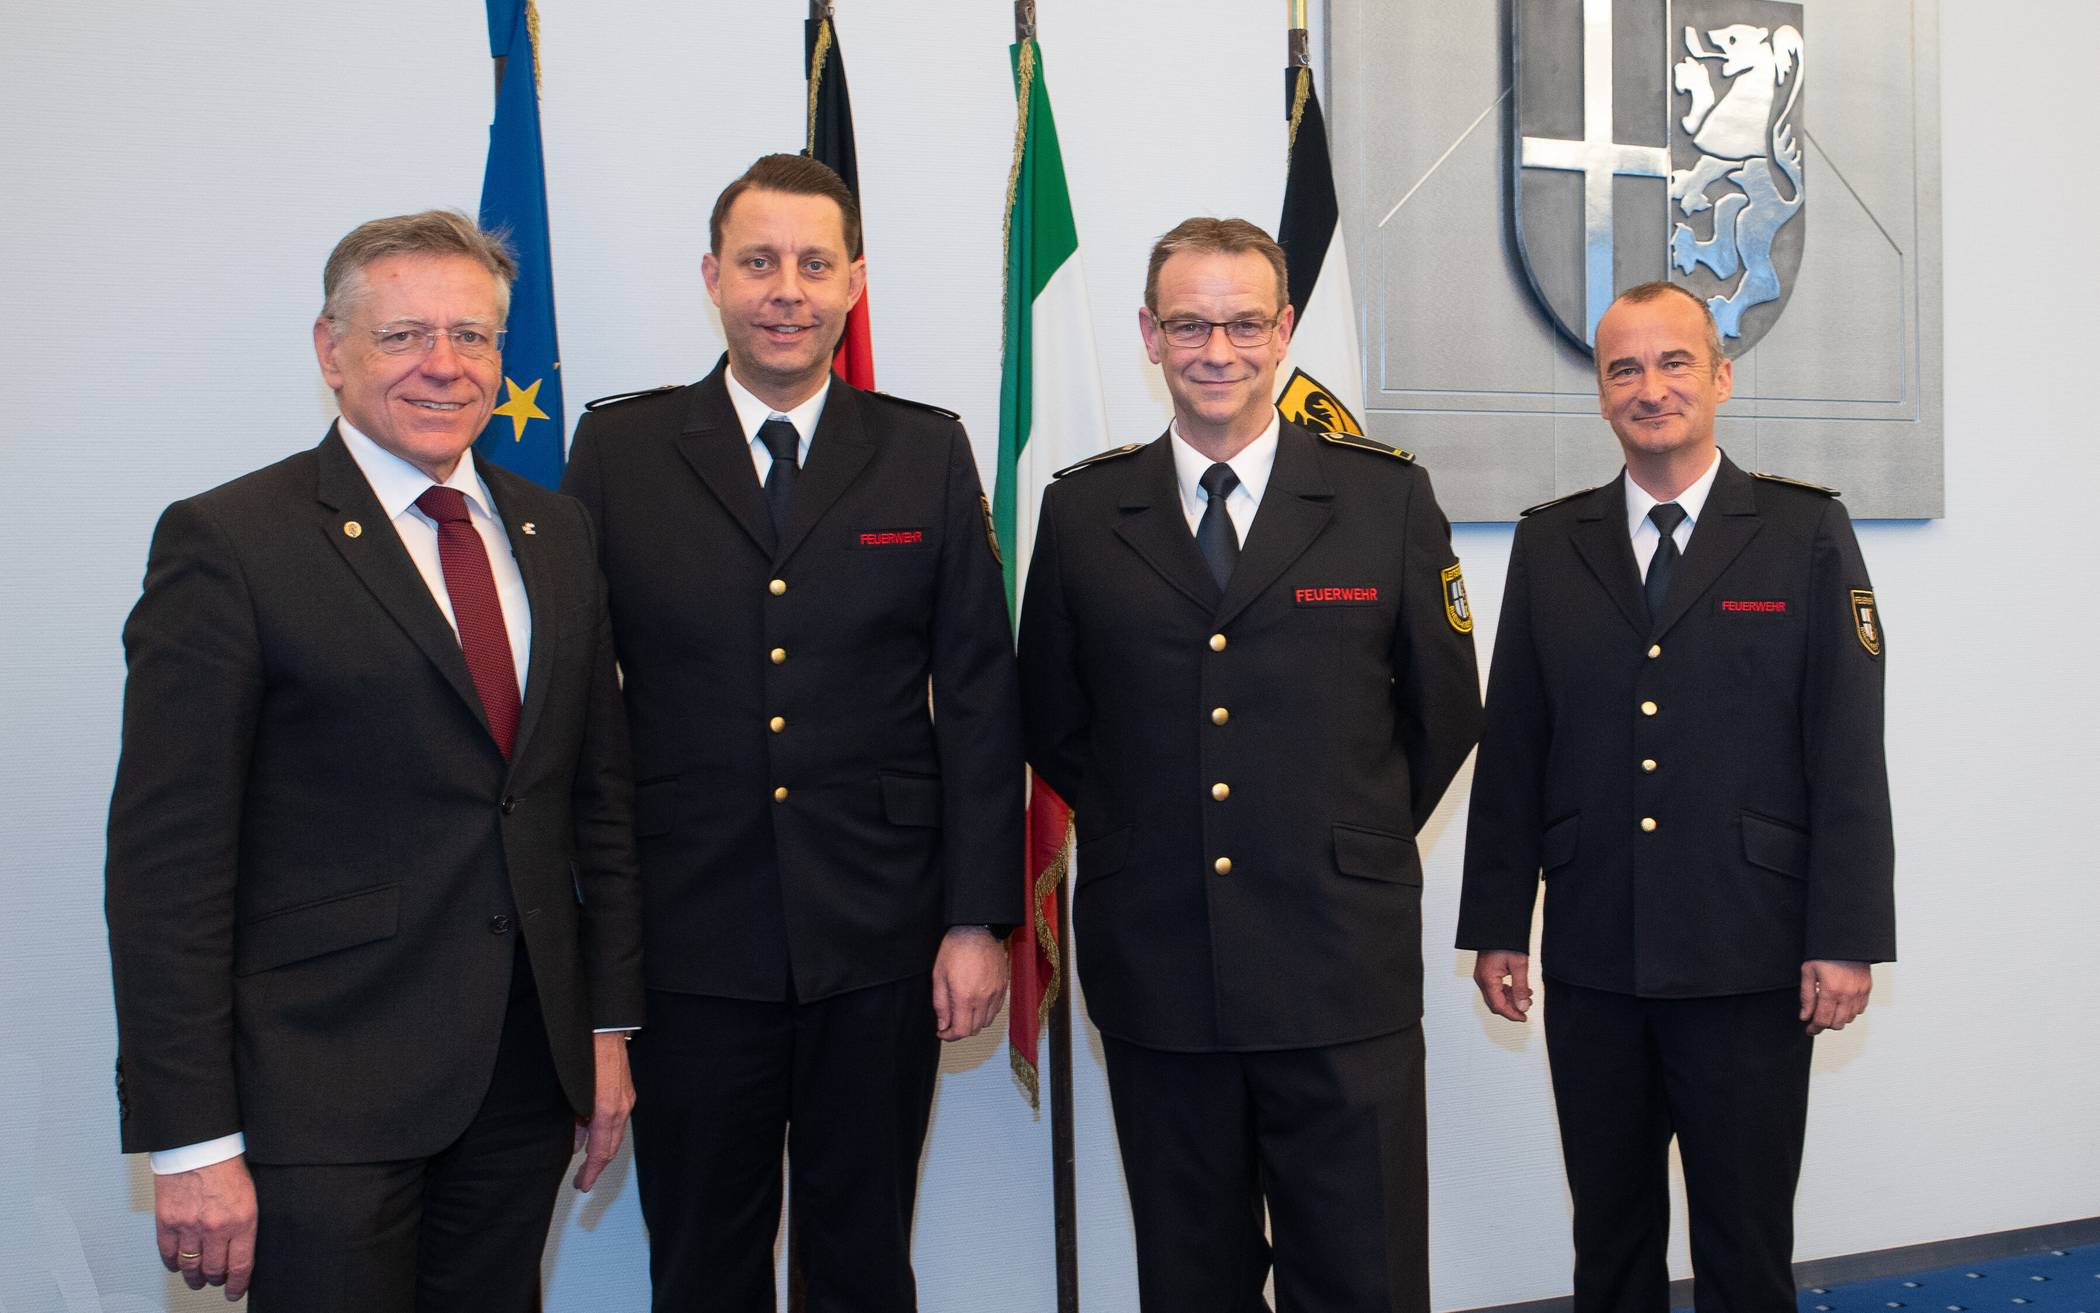  Von links: Landrat Hans-Jürgen Petrauschke hat die Ernennungsurkunden an Heinz-Dieter Abels, Michael Wolff und Stefan Meuter überreicht.   